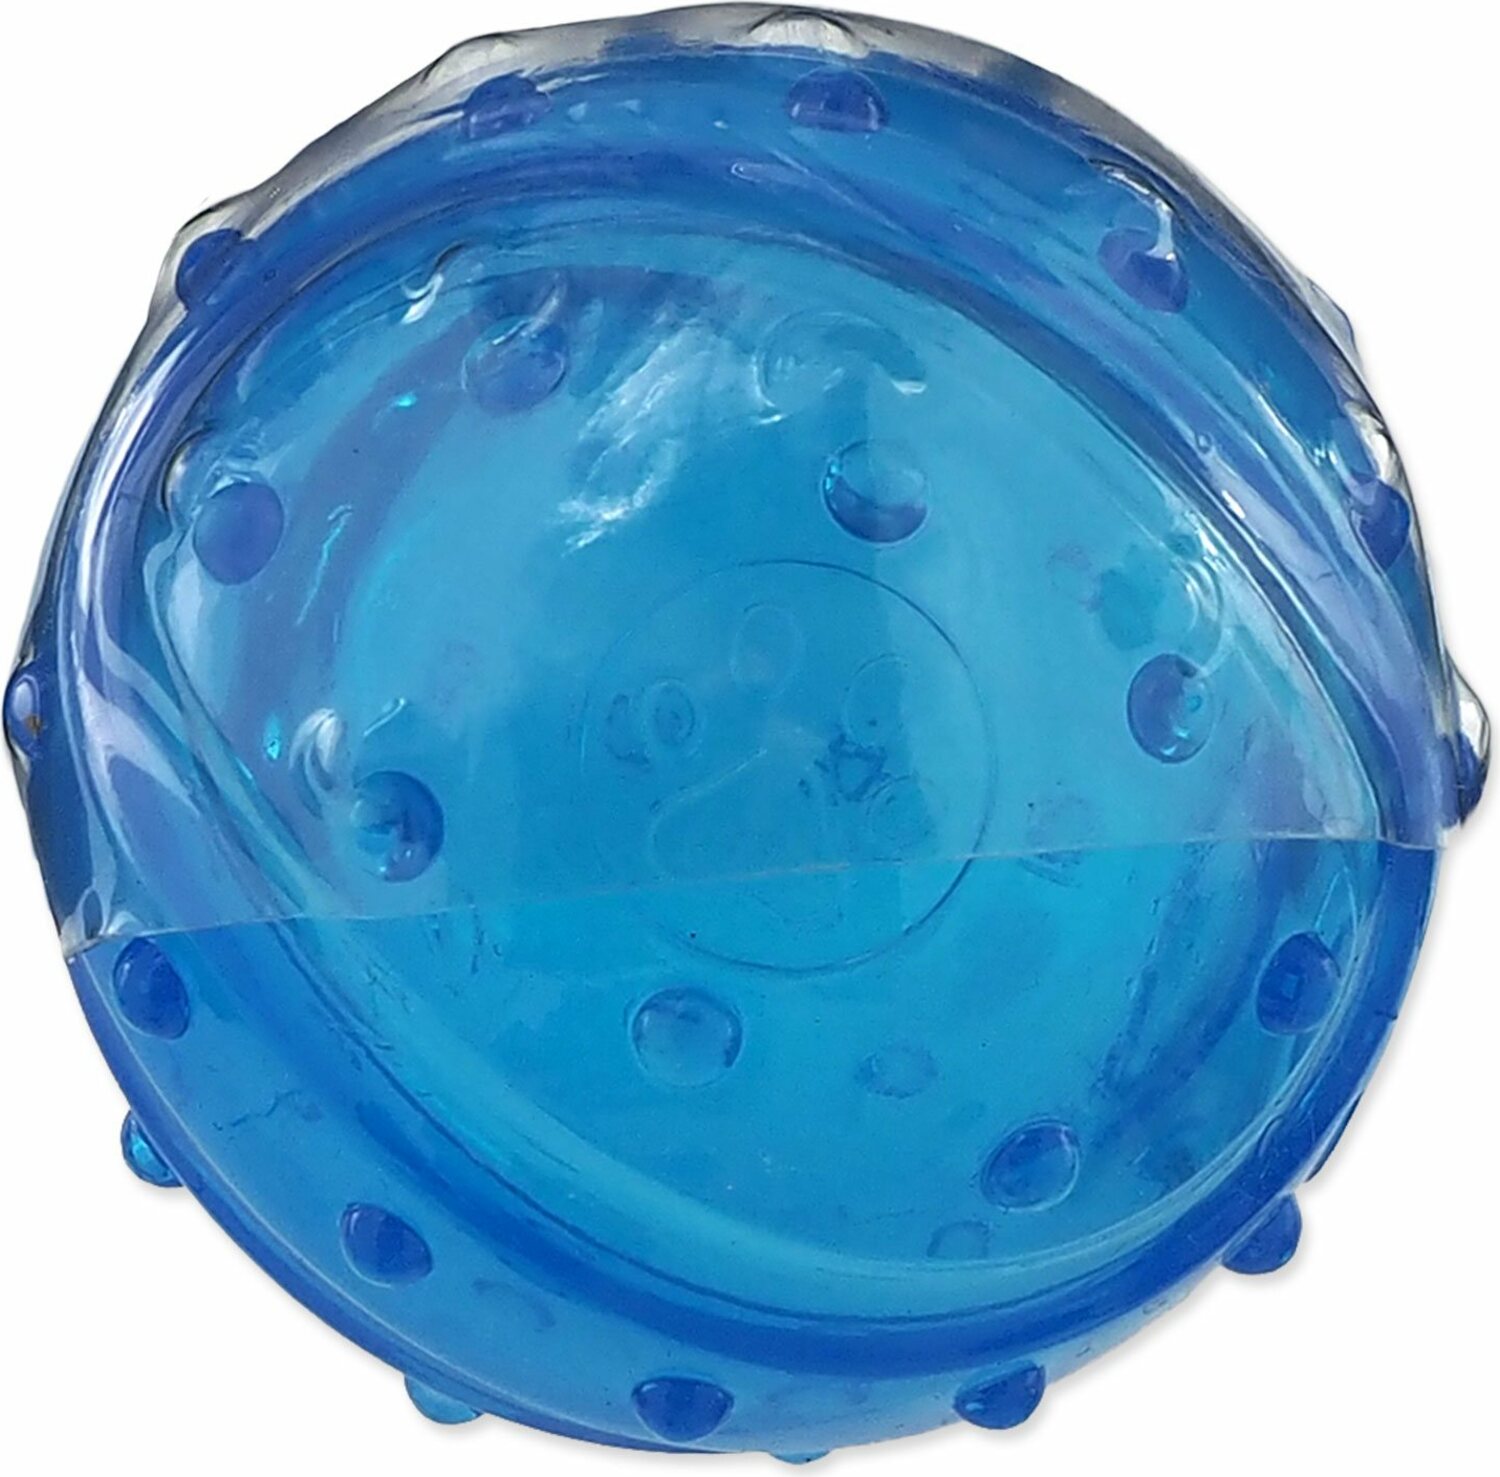 Hračka Dog Fantasy STRONG míč s vůní slaniny modrá 8cm